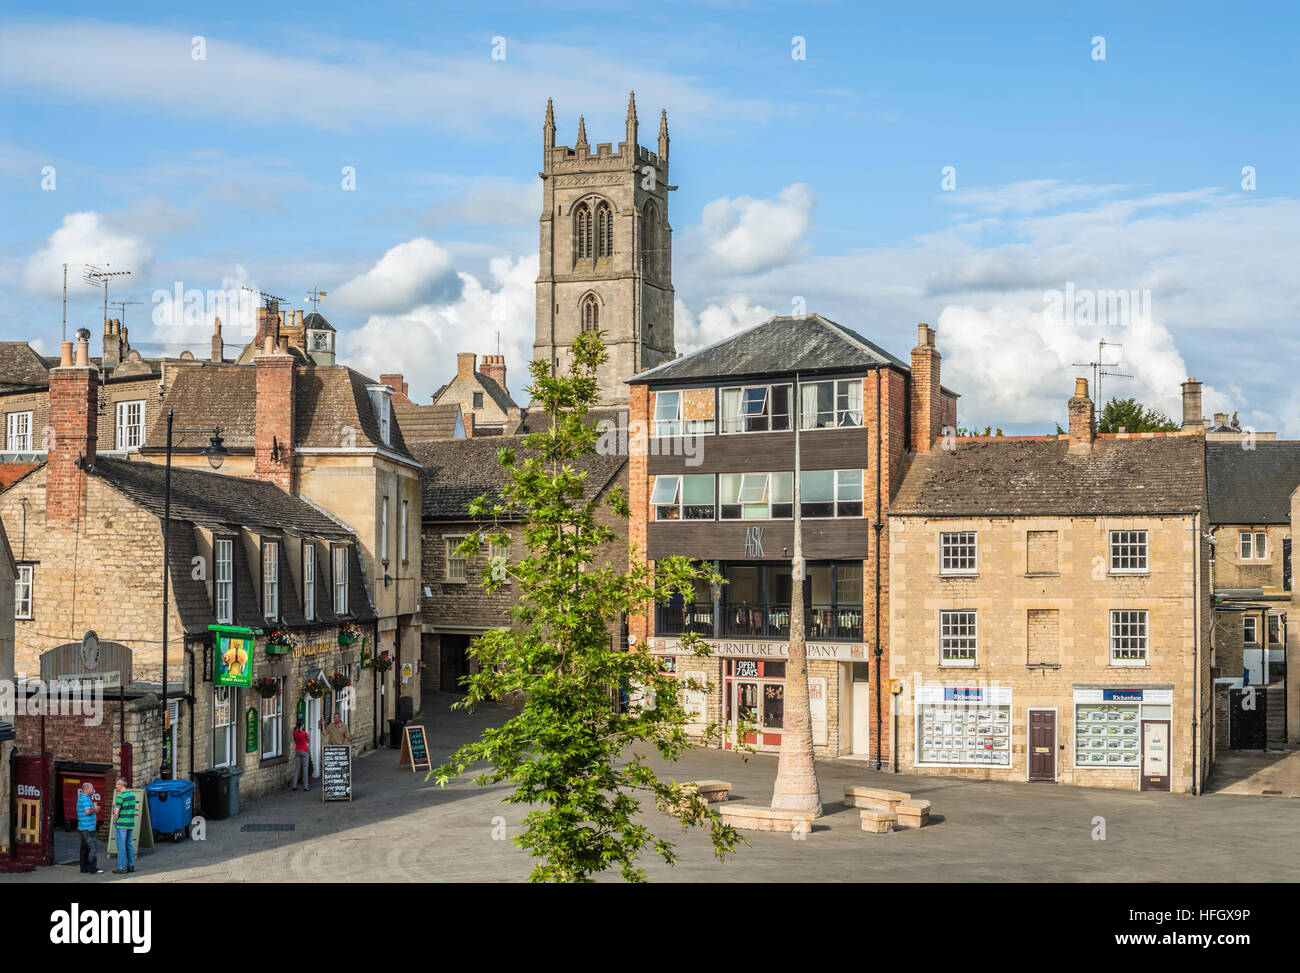 Historischen alten Stadt von Stamford, eine alte Stadt liegt etwa 100 Meilen nördlich von London, England. Stockfoto